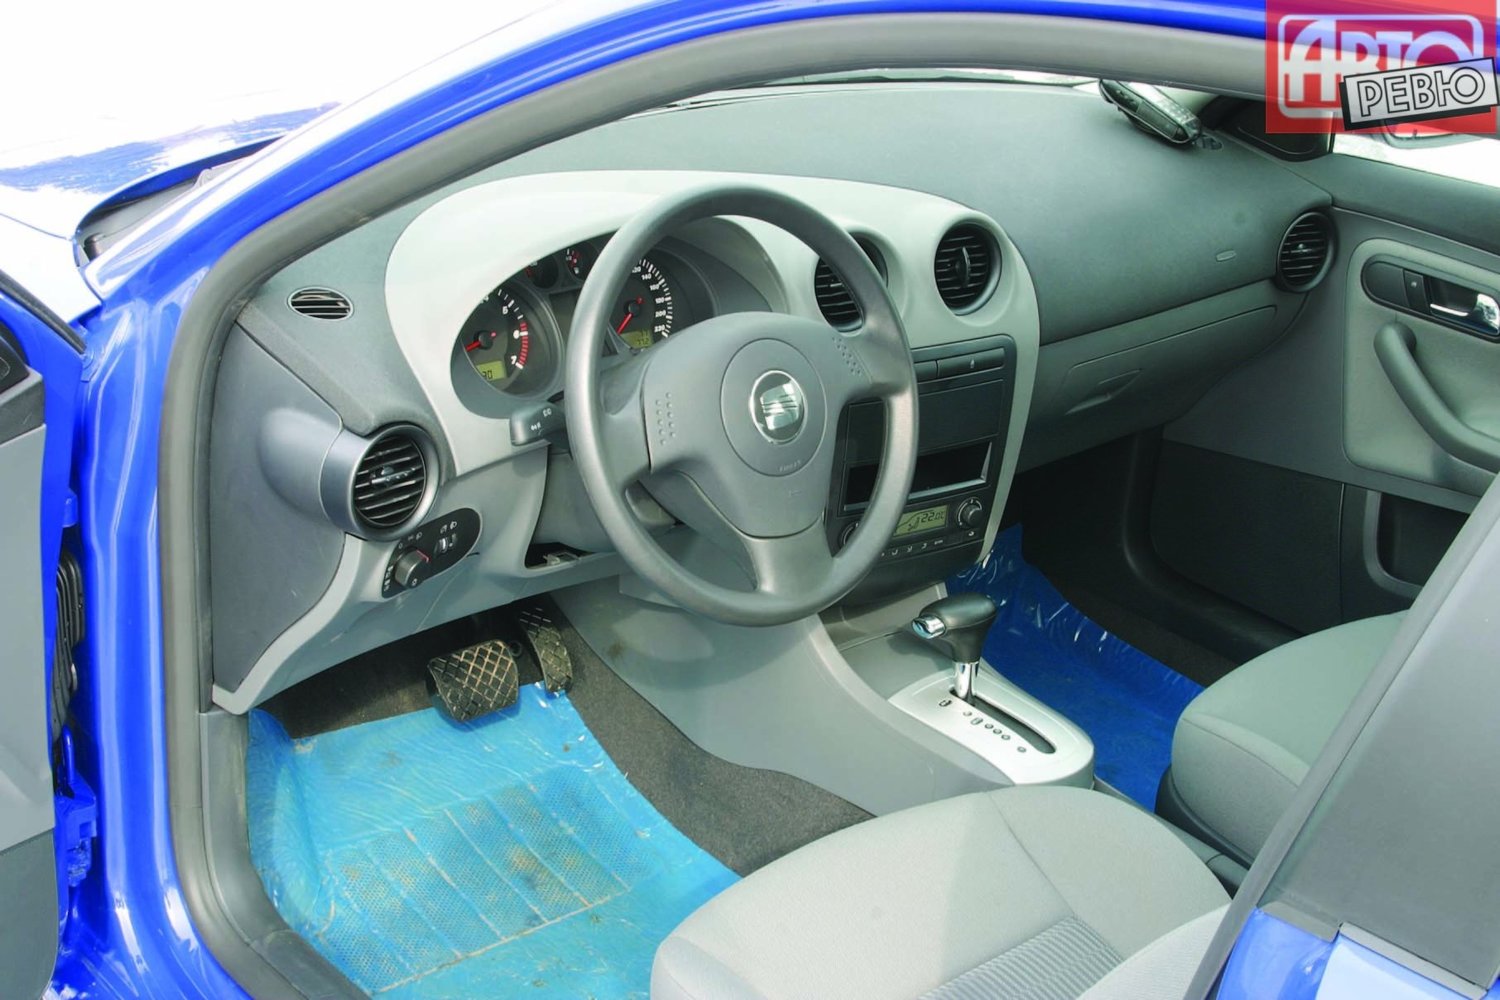 хэтчбек 3 дв. SEAT Ibiza 2002 - 2006г выпуска модификация 1.2 MT (54 л.с.)